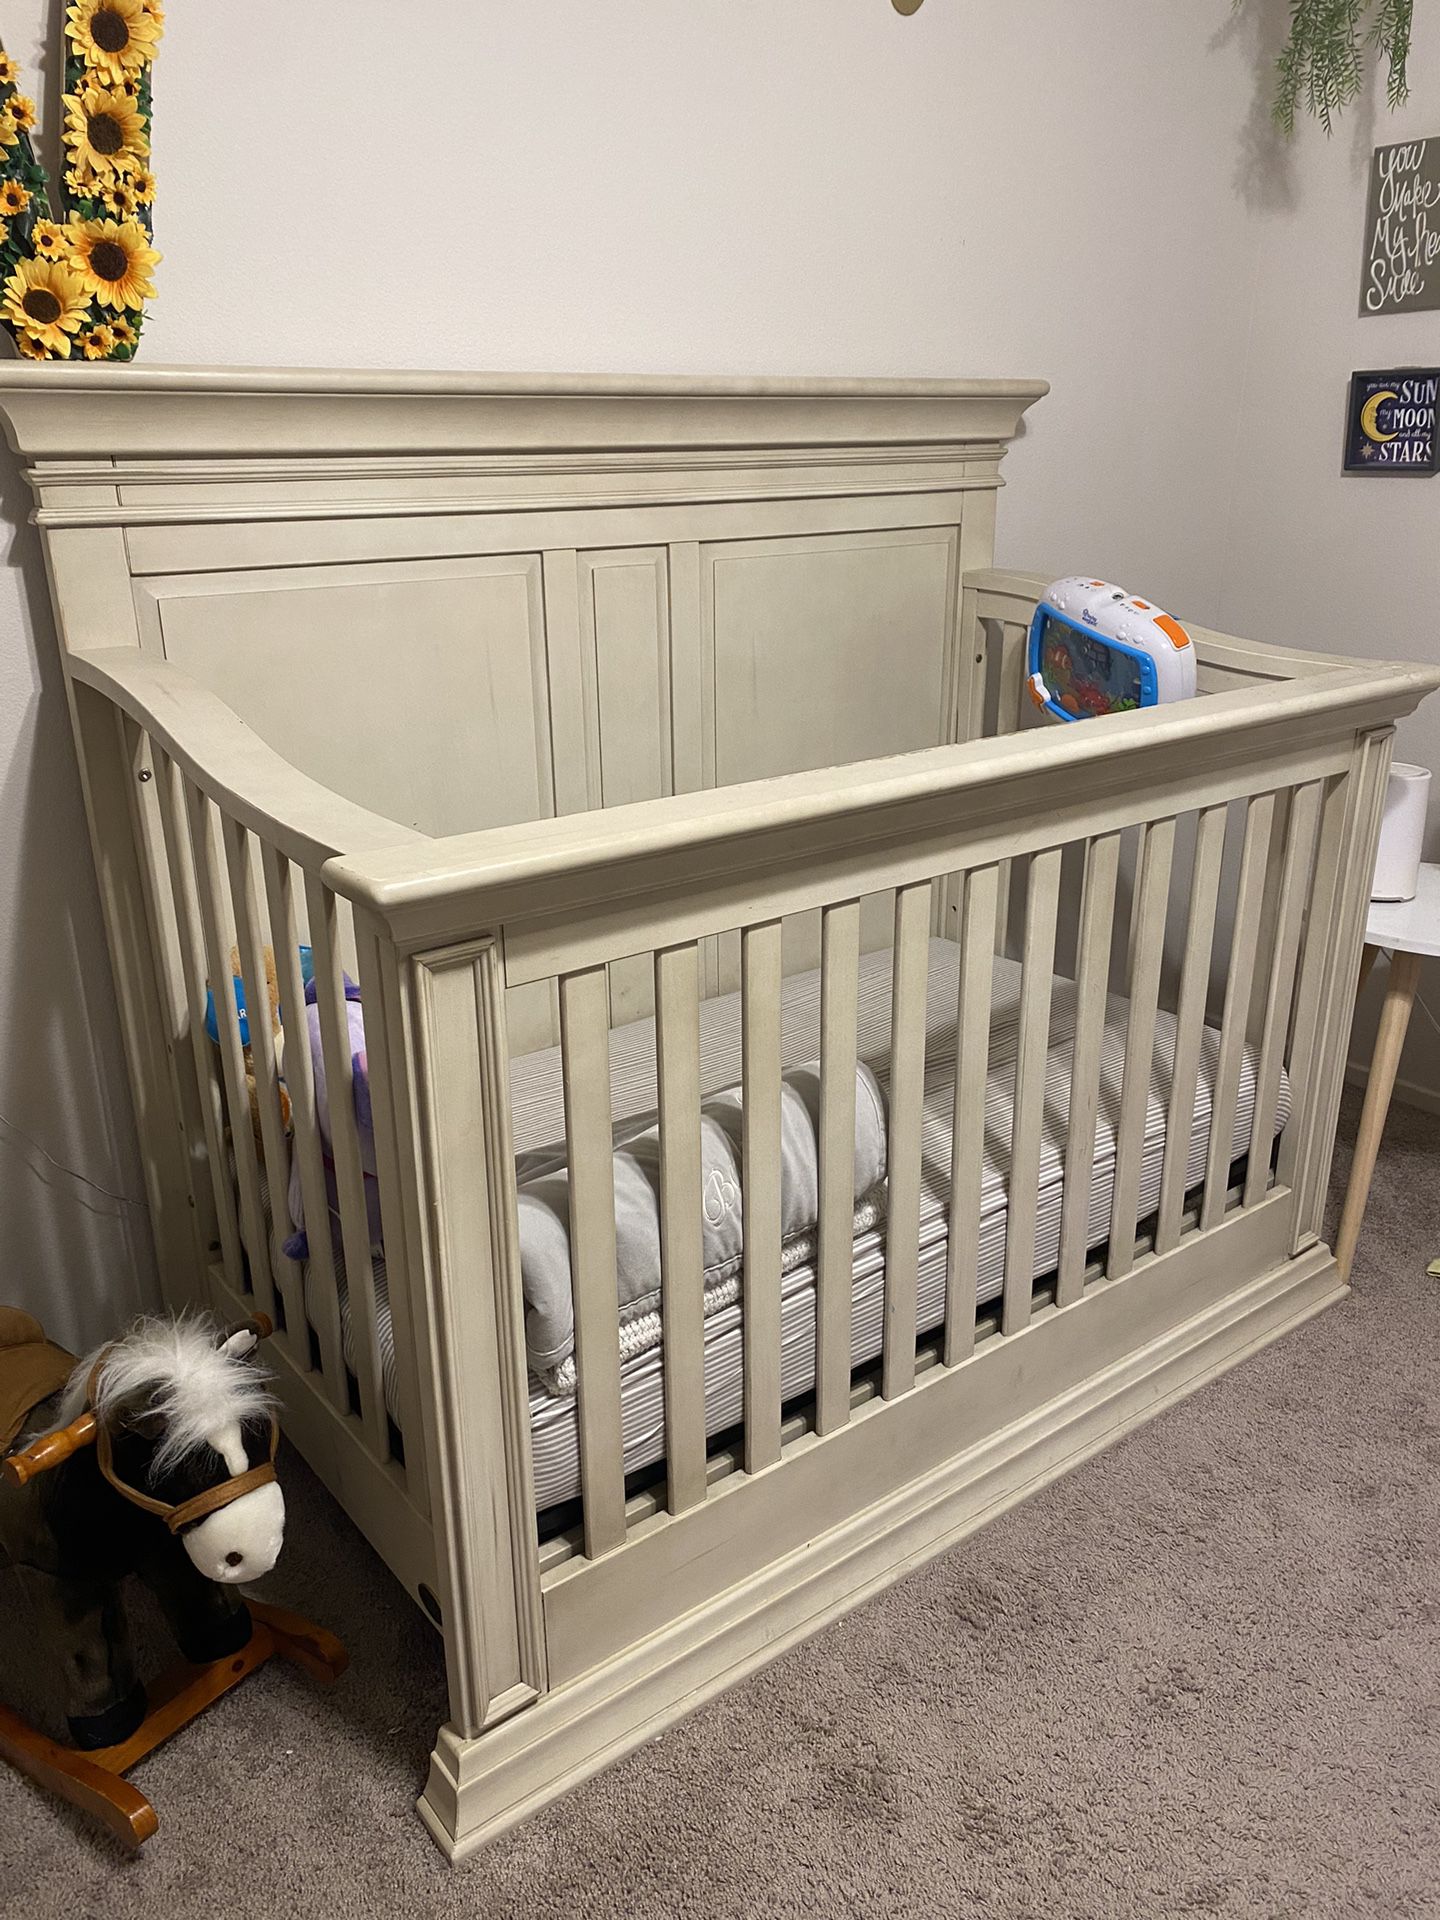 Buy Buy Baby Crib